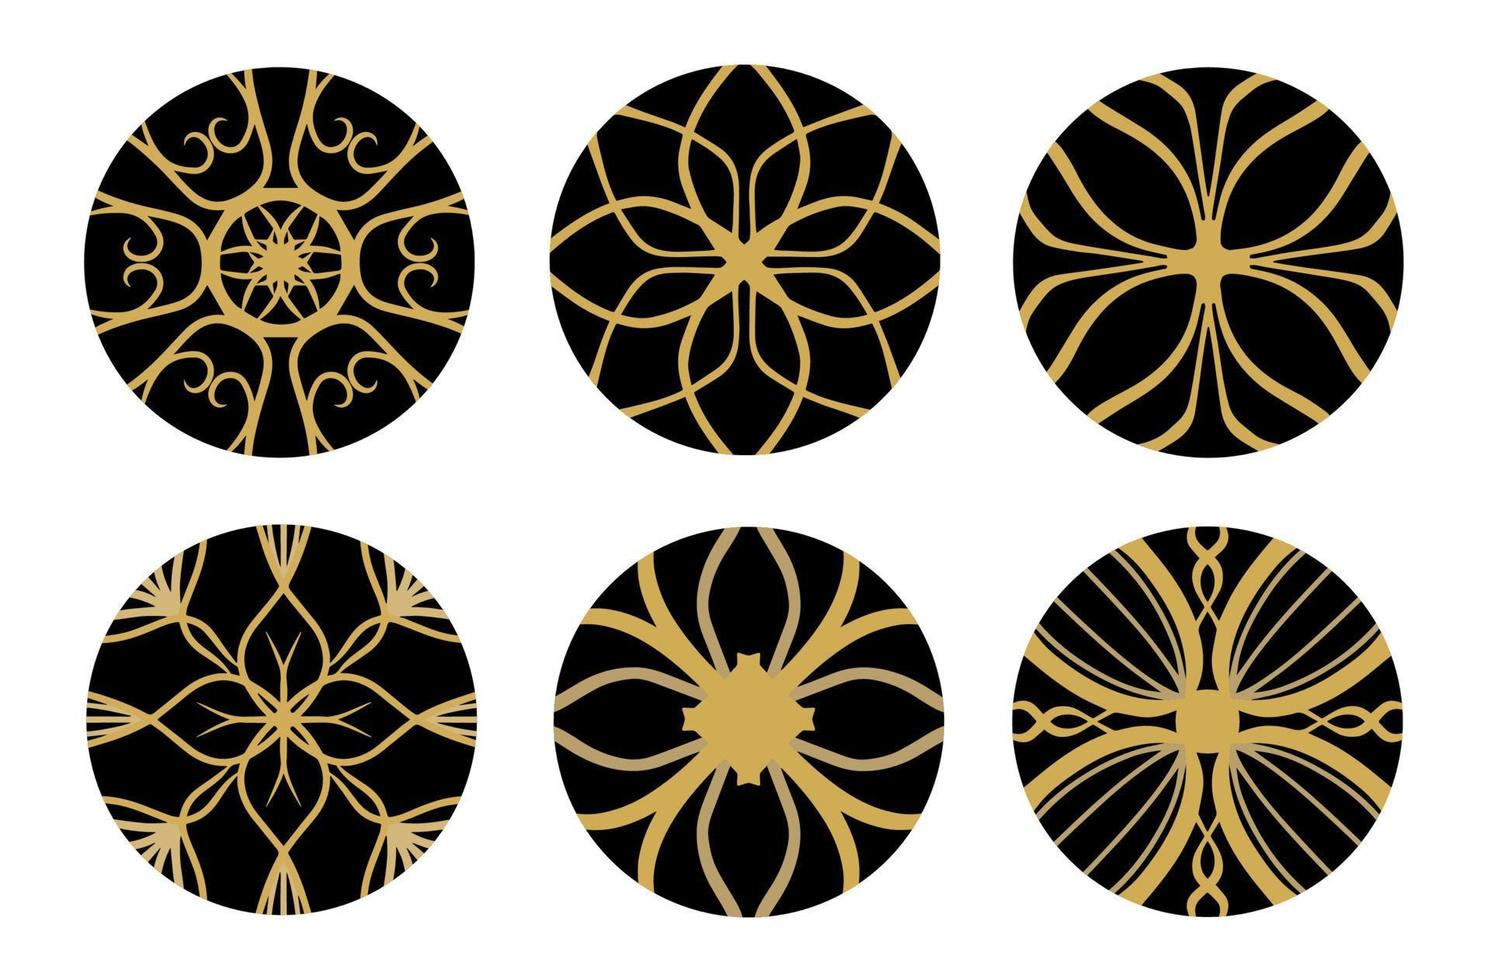 reeks van goud meetkundig en hand- tekening ornamenten met tribal vorm in zwart cirkels. ontworpen in ikat, boho, azteeks, volk, motief, zigeuner, en Arabisch stijl. elementen voor uw ontwerp. vector illustratie.